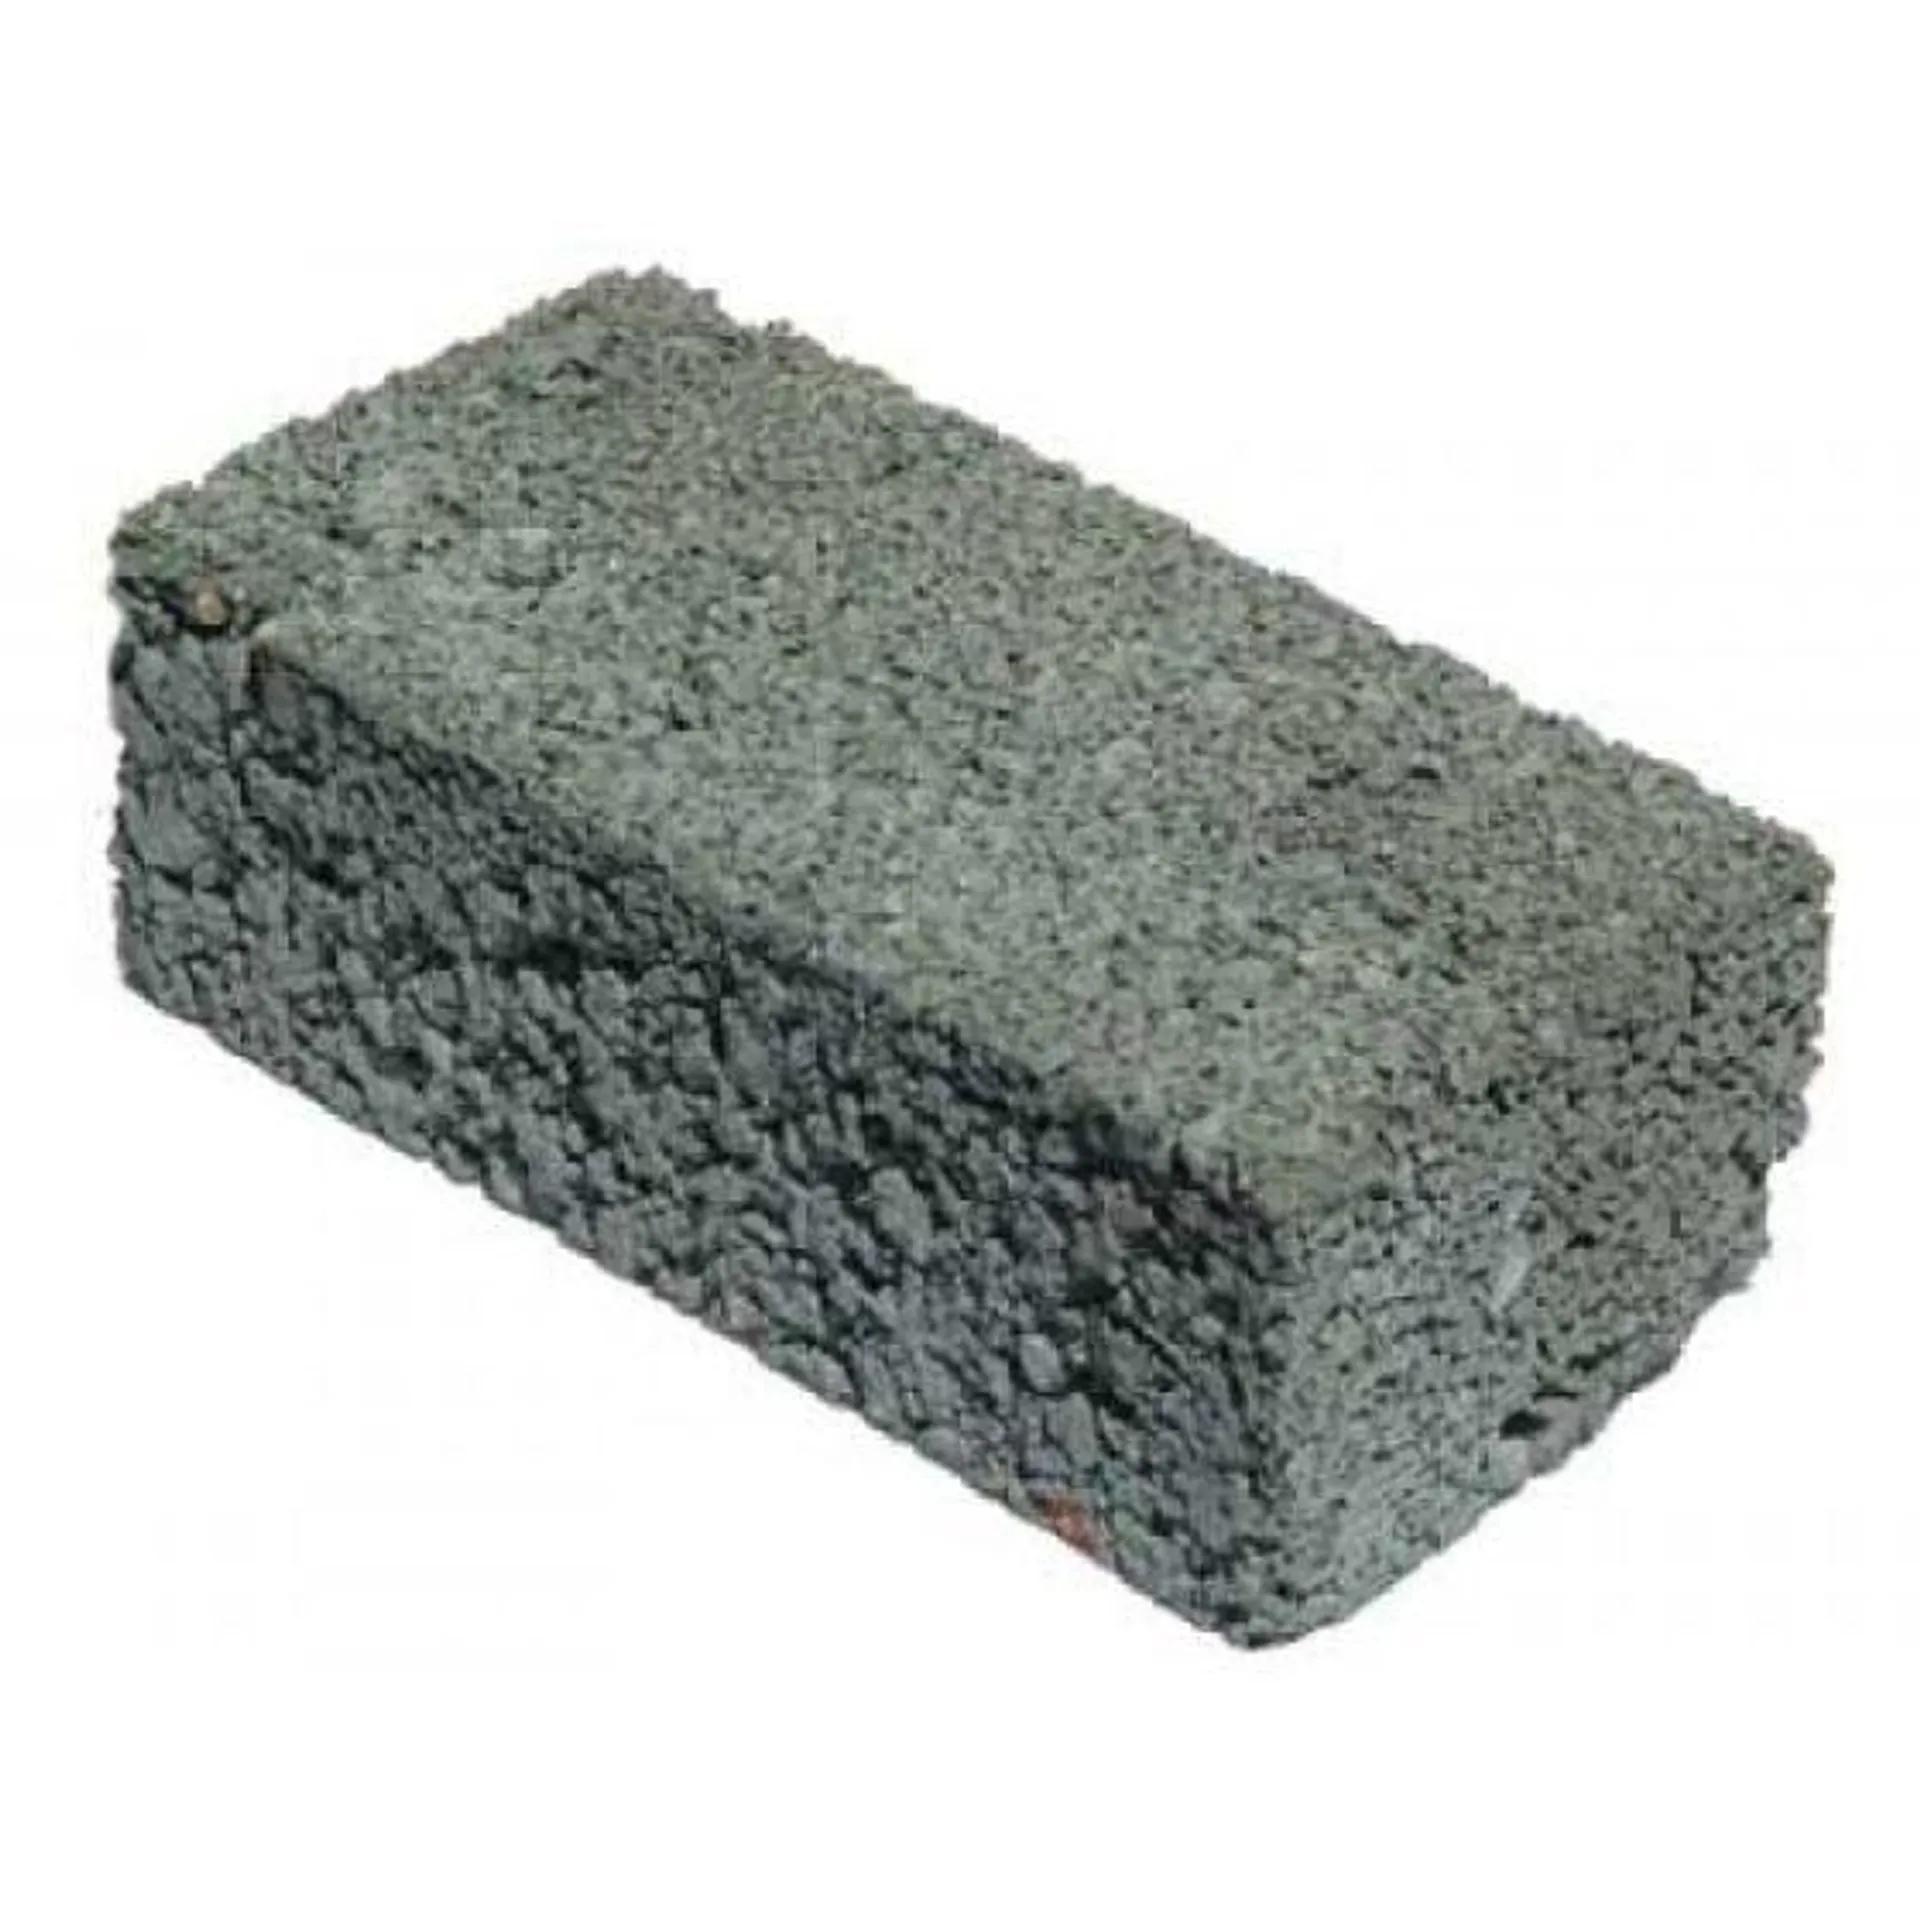 Brick Cement Stock 7MPA